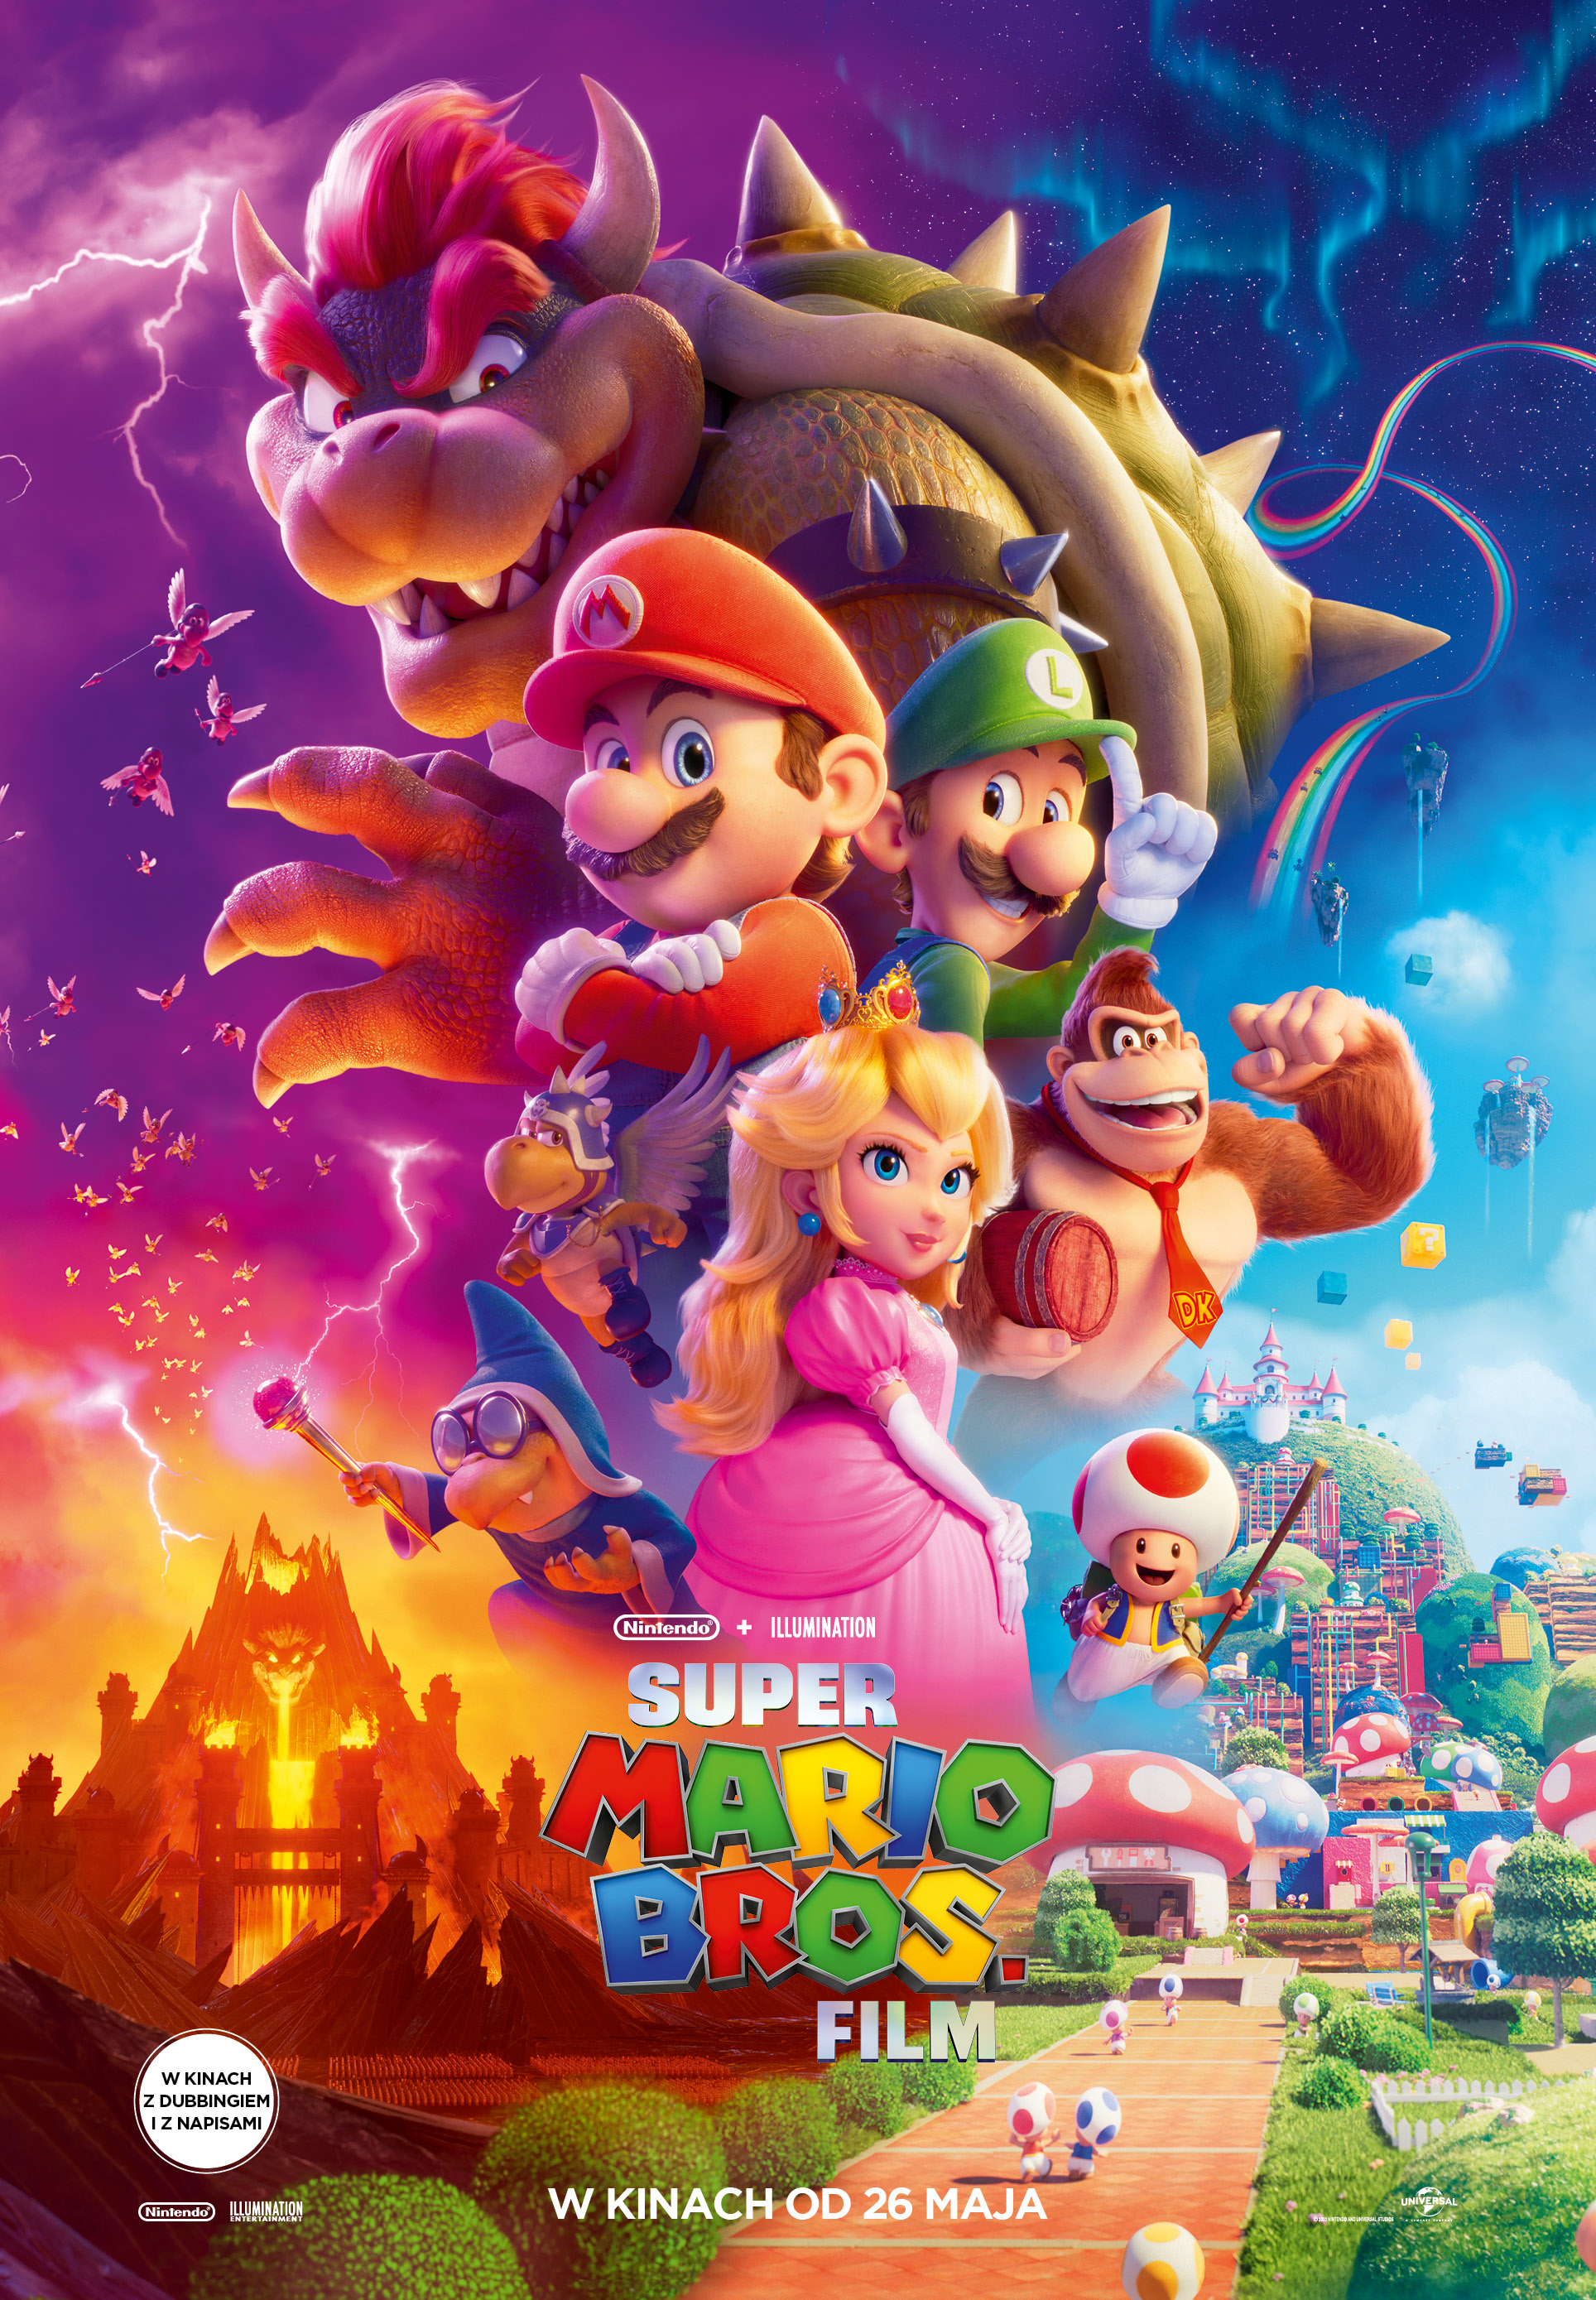 Plakat Super Mario Bros. Film 170629